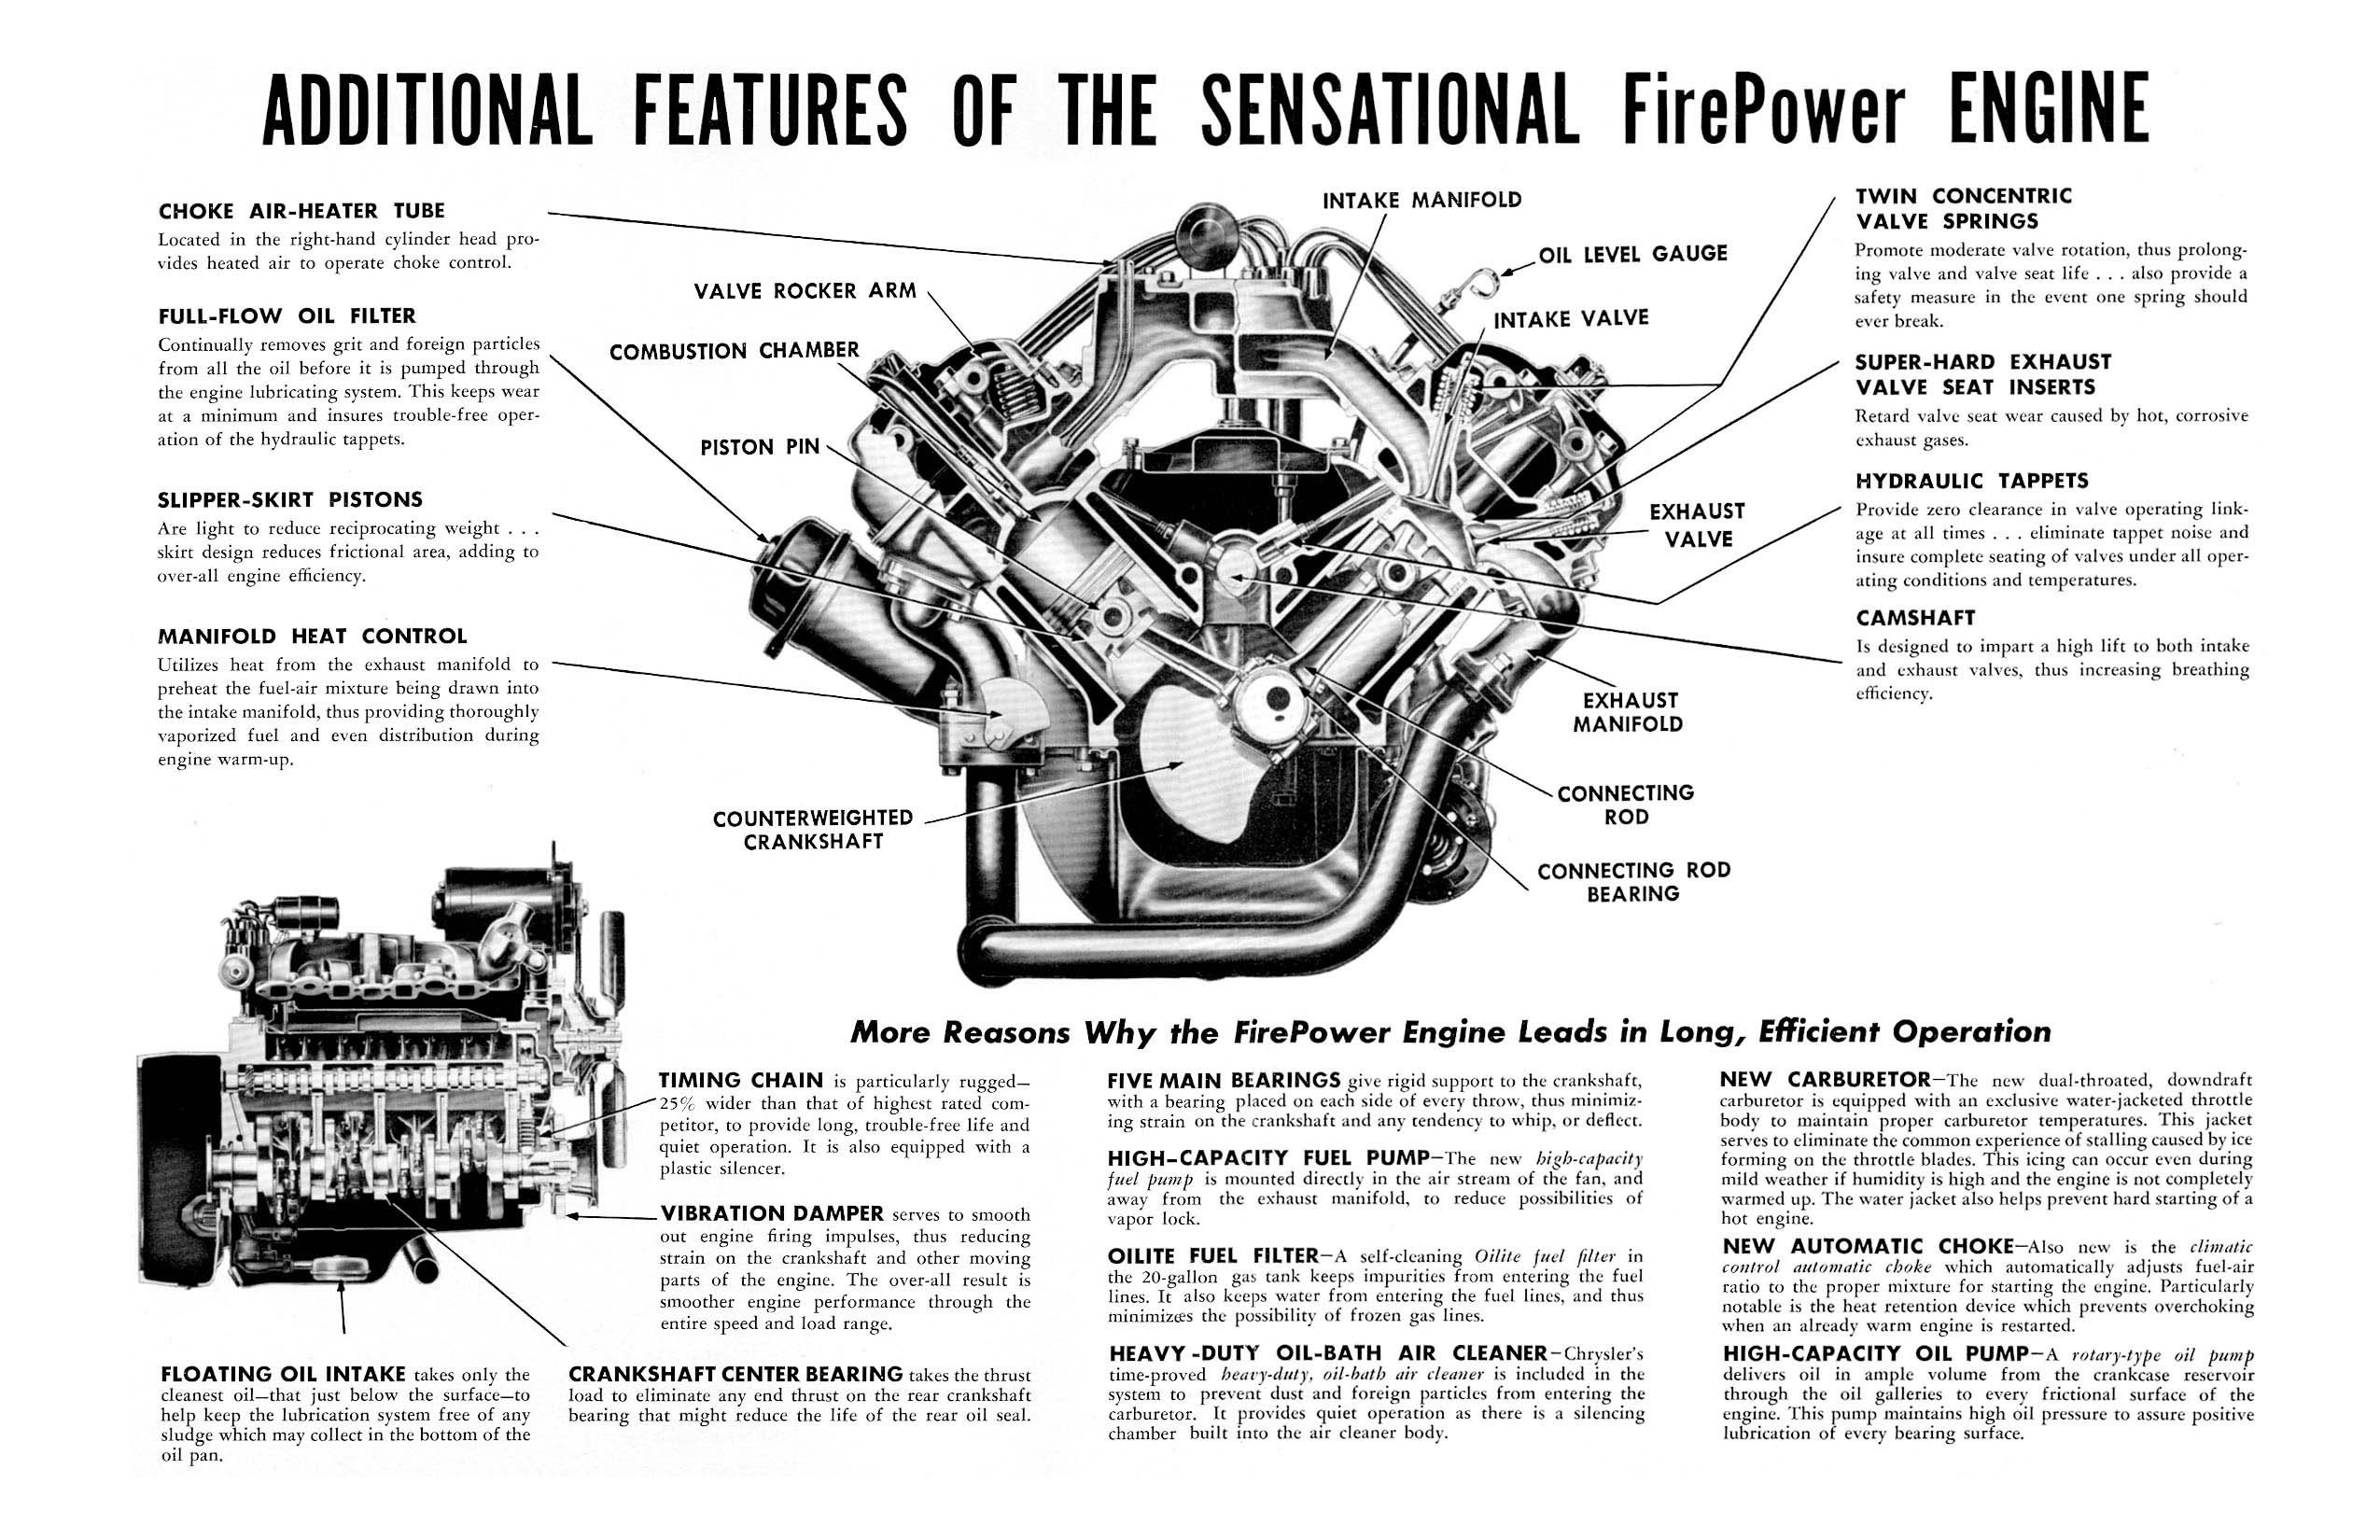 Motor Trend - voiture de l'année : 1951 1951%20Chrysler%20FirePower%20Advantages-03-04_jpg